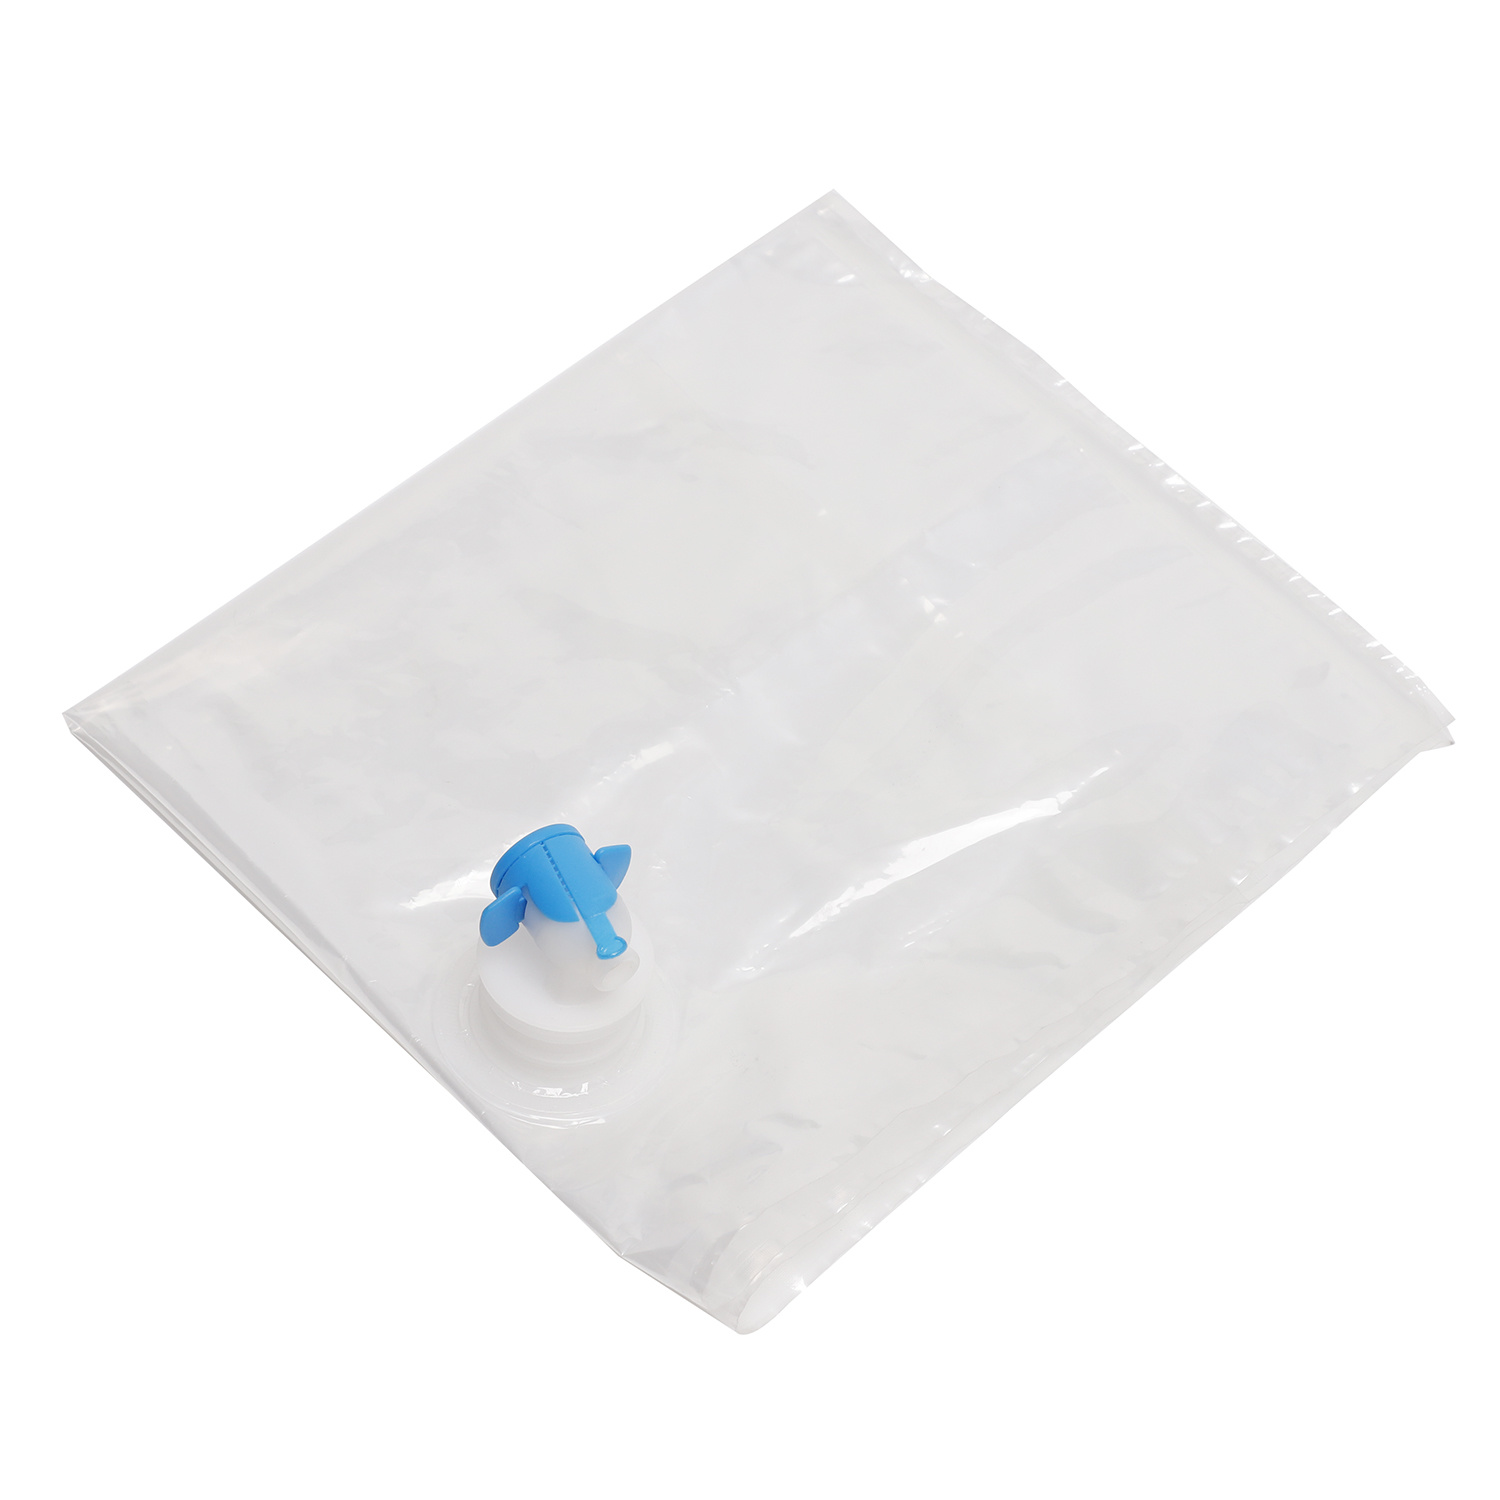 10L BIB Transparent Bag-In-Box Packaging for Water